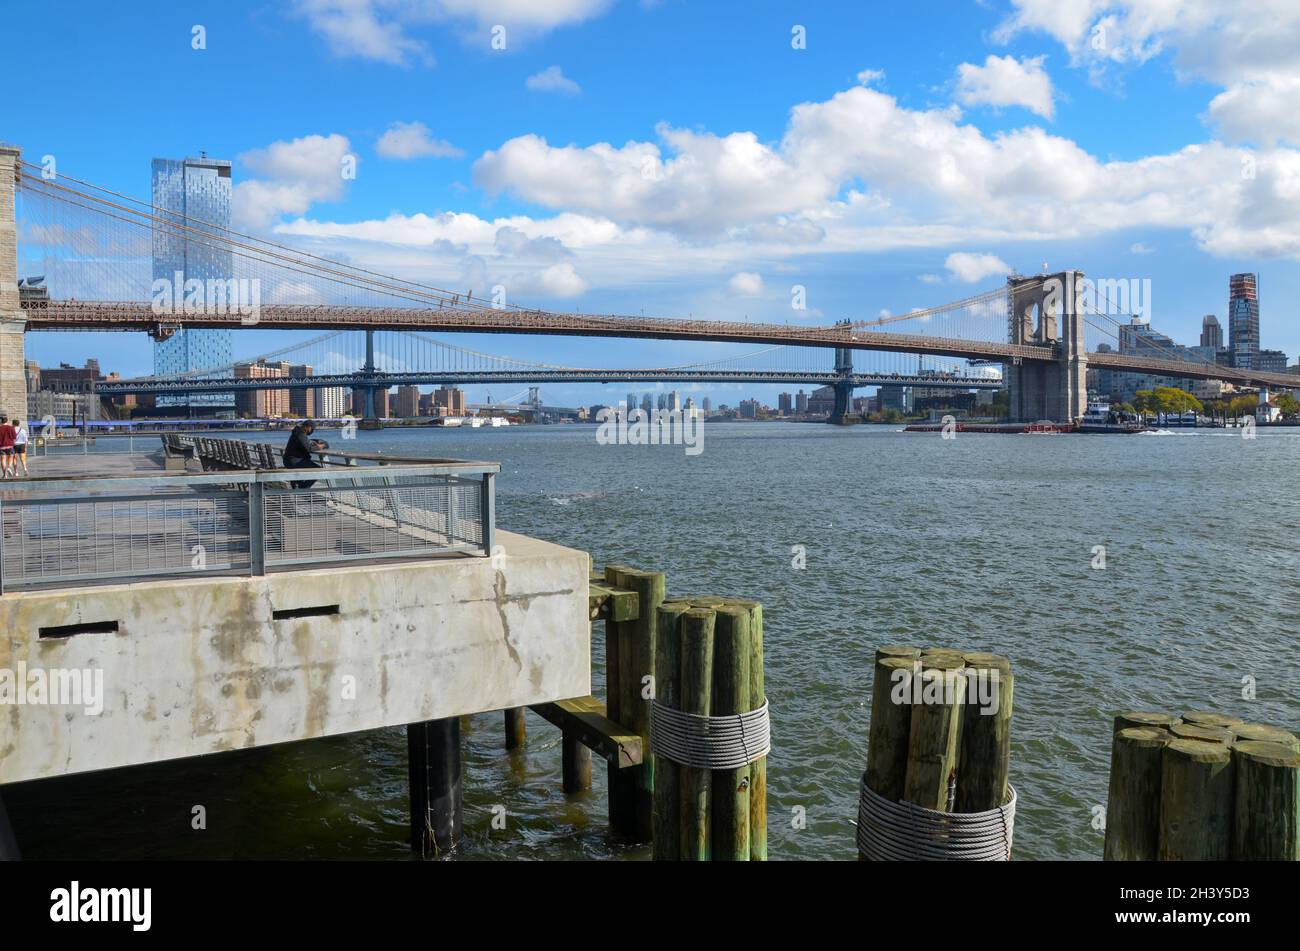 Le pont de Brooklyn est vu de loin à New York le 30 octobre 2021. Banque D'Images